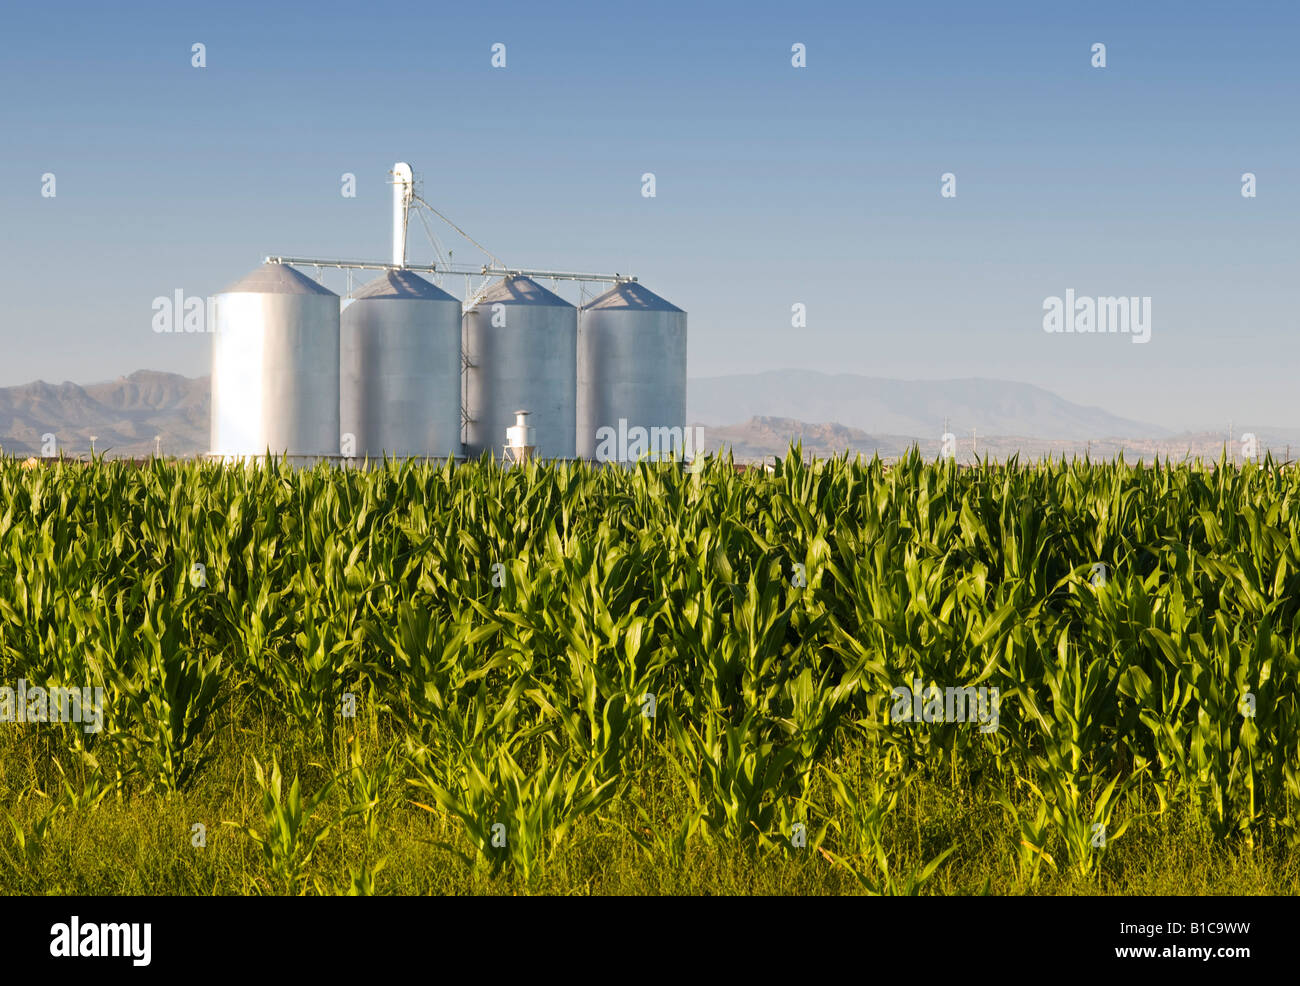 Cosecha de maíz con los silos de la granja y montañas en segundo plano. Foto de stock